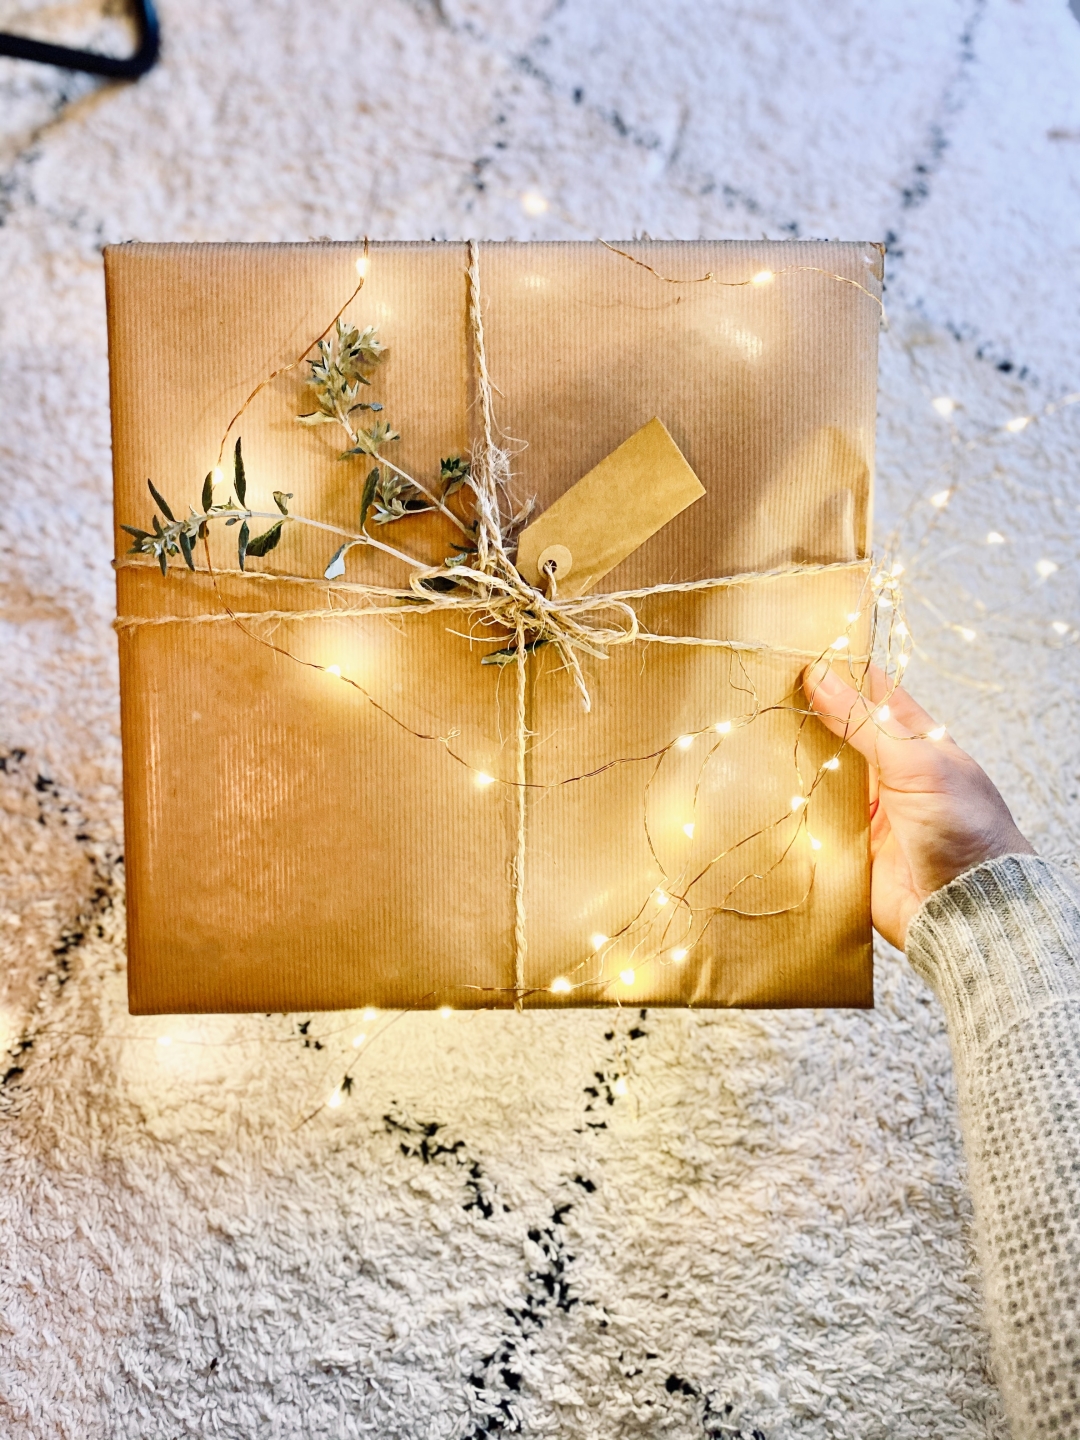 Ovaj božićni poklon točno zna što vam treba – zato je jedan od najpopularnijih ove godine 